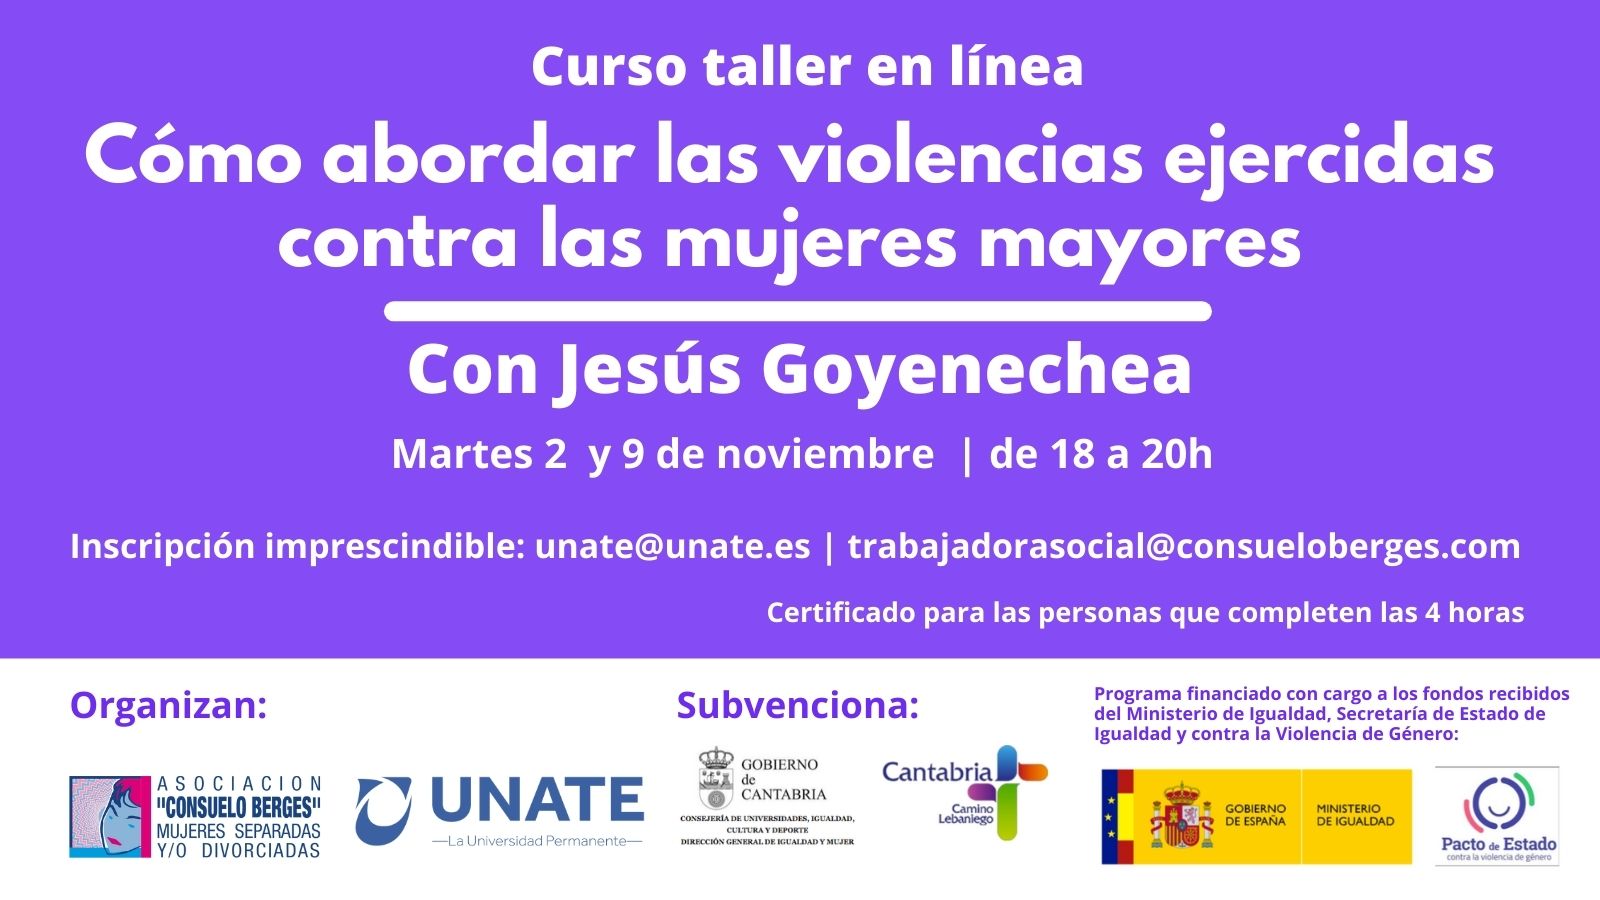 Curso-taller en línea con Jesús Goyenechea: Cómo abordar las violencias ejercidas contra las mujeres mayores